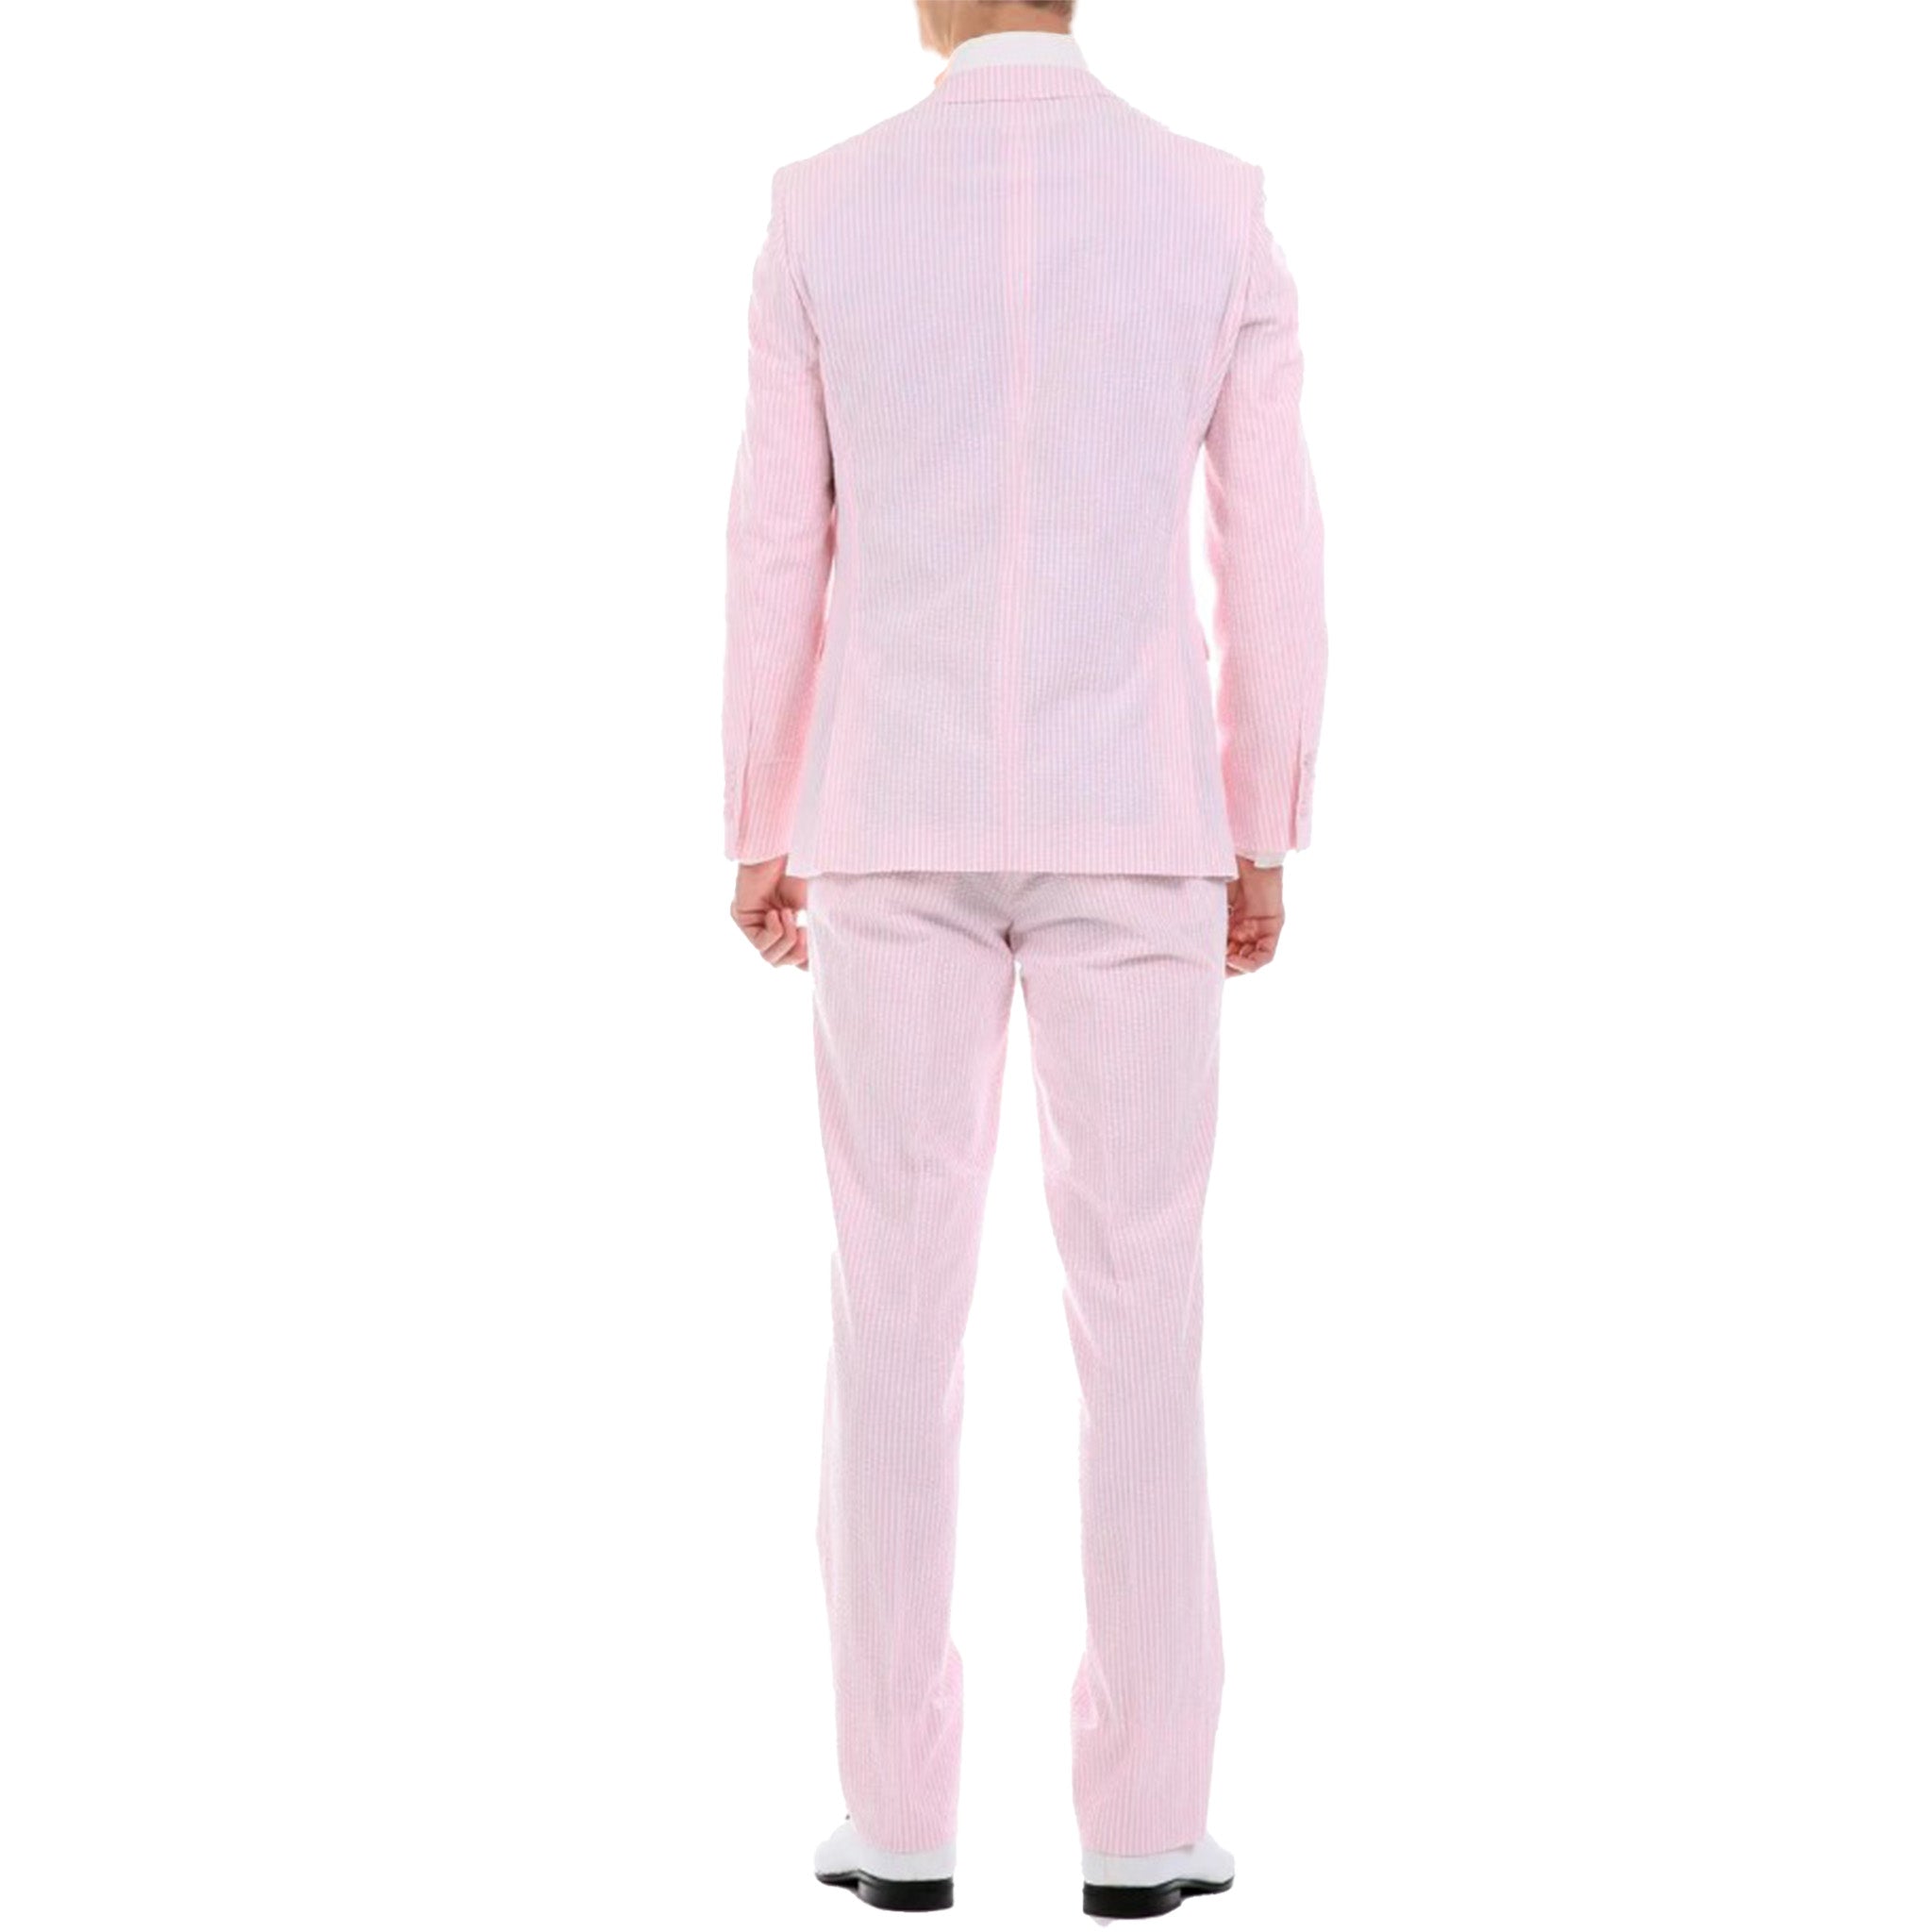 Slim Fit Pink Seersucker Suit